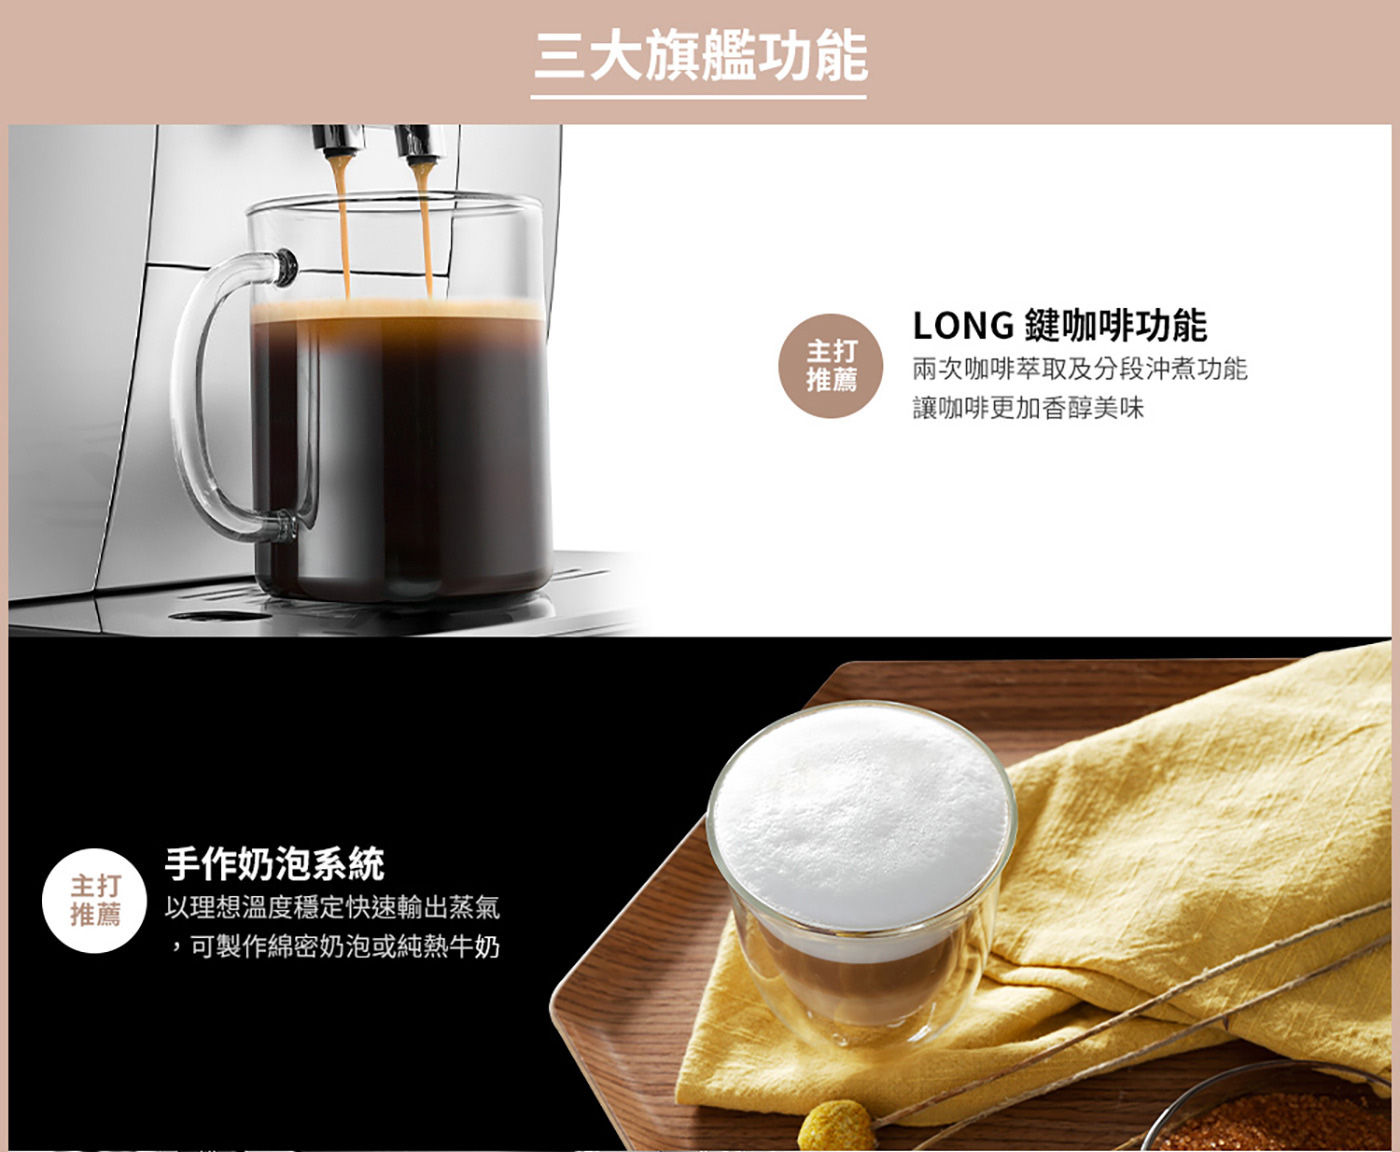 迪朗奇 全自動義式咖啡機 LONG鍵咖啡功能